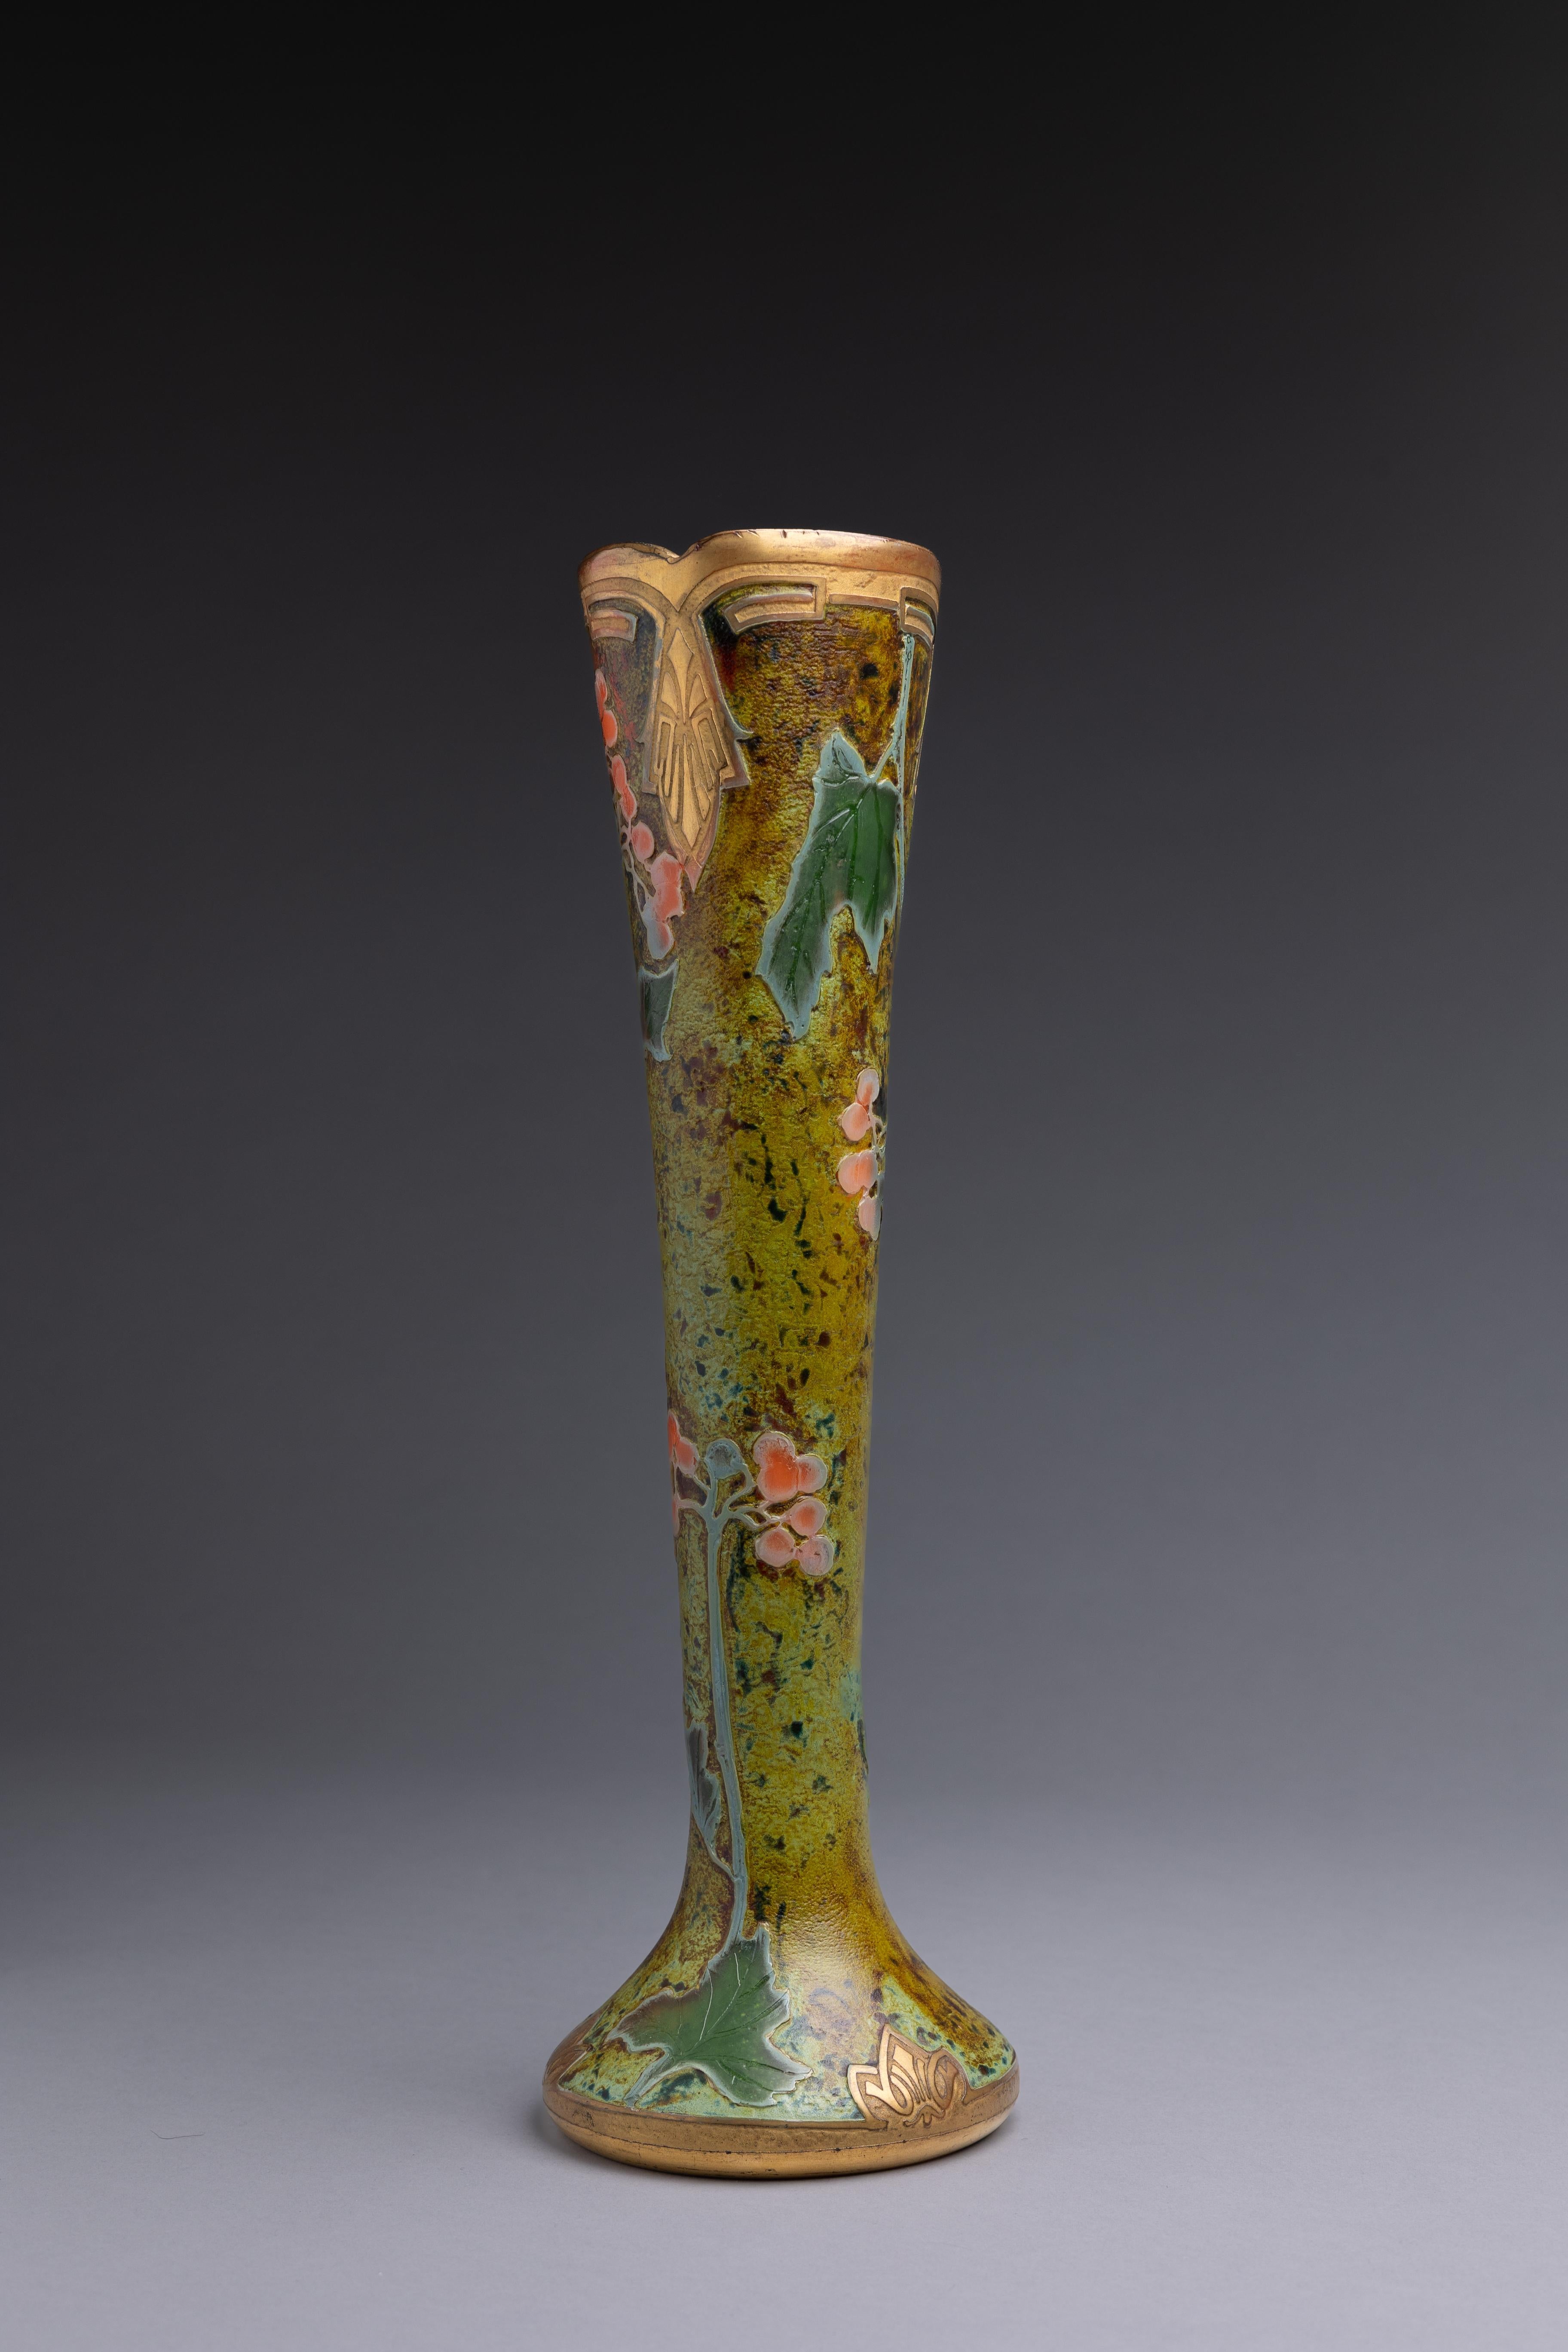 Jugendstilvase aus Glas, hergestellt von der französischen Glasmanufaktur Legras et Cie in den Jahren 1900-1914.

Frankreich wurde zu Beginn des 20. Jahrhunderts zum Zentrum der Kunstglasproduktion, wobei Namen wie Gall, Daum und Lalique den Markt